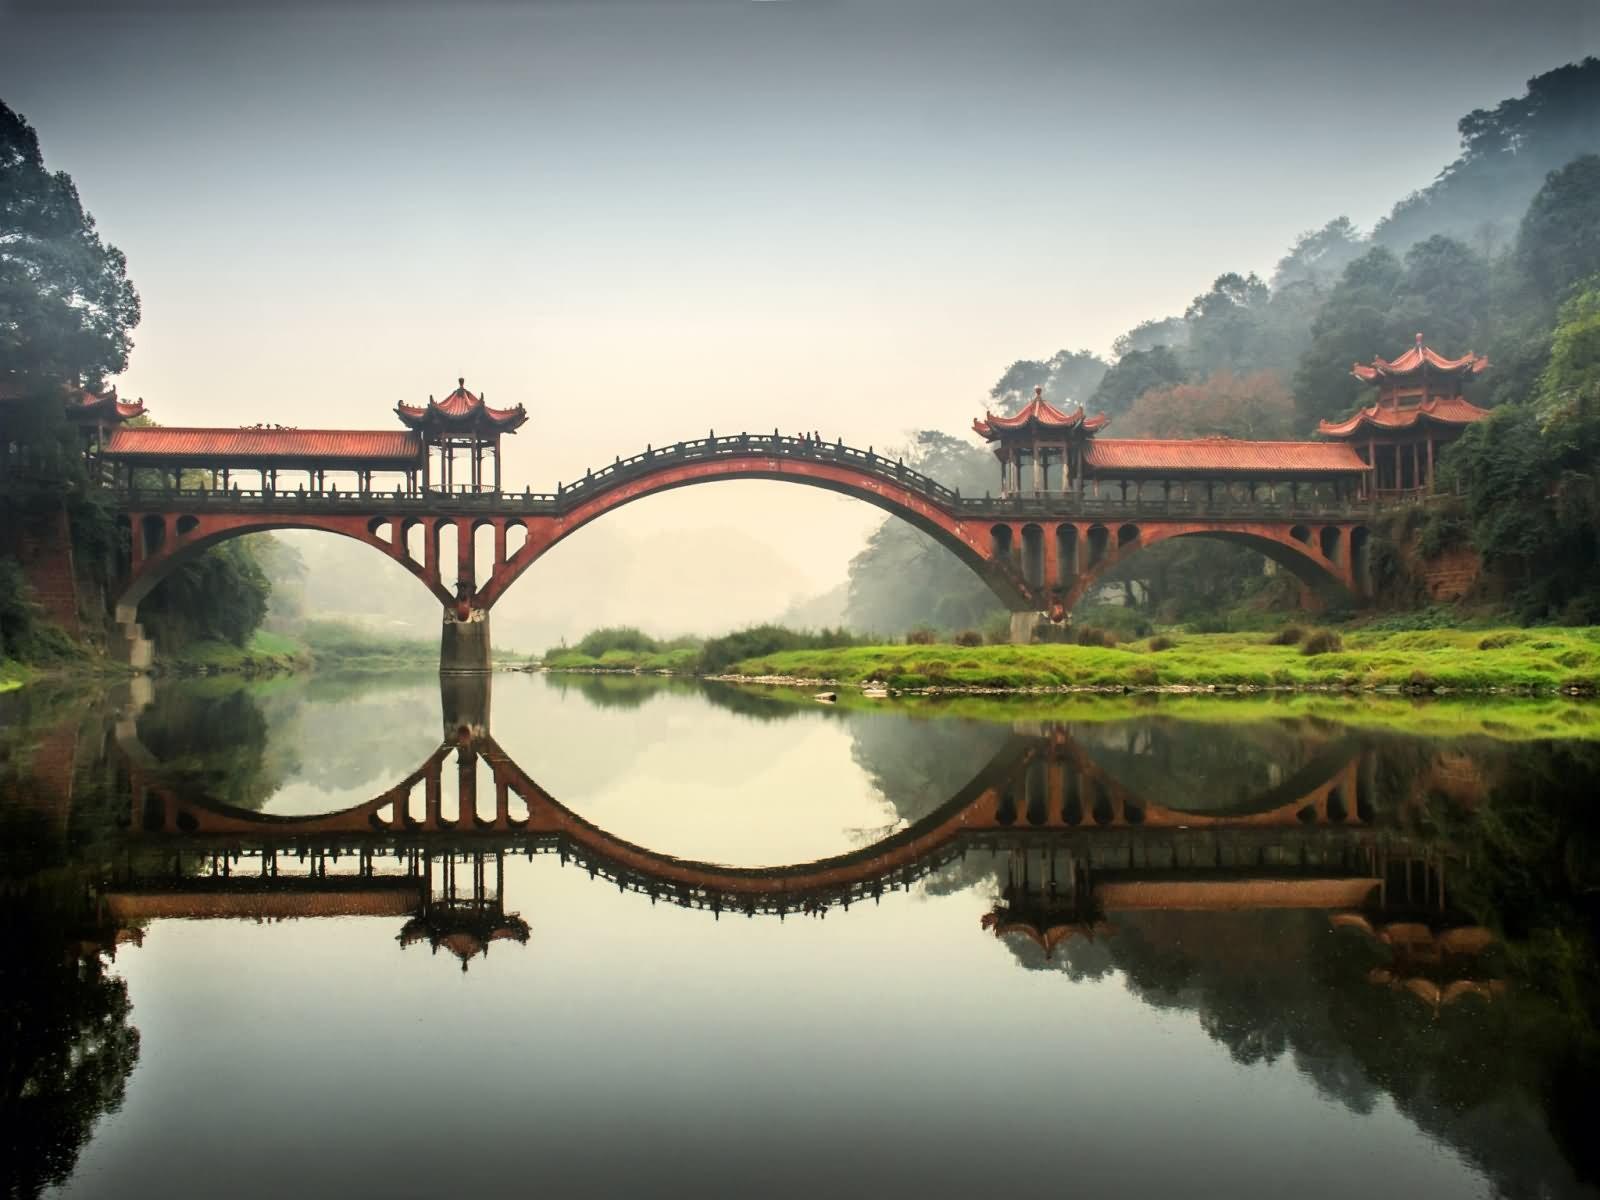 #reflection, #Sichuan, #landscape, #China, #bridge